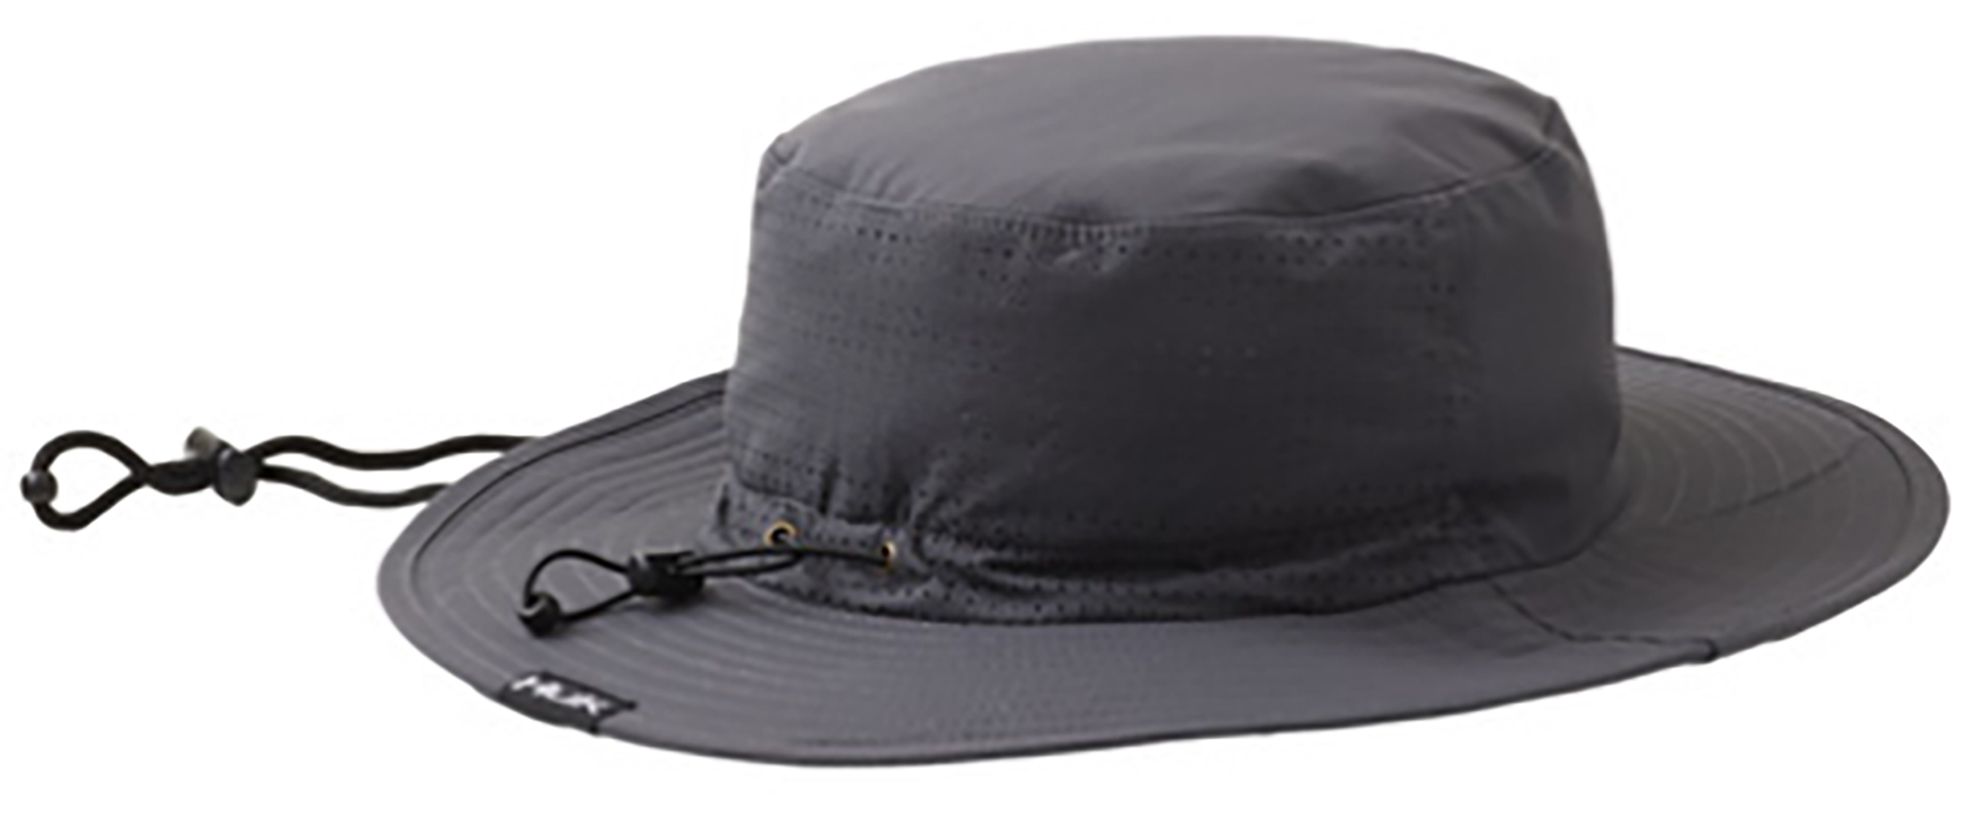 Huk Men's Solid Boonie Bucket Hat